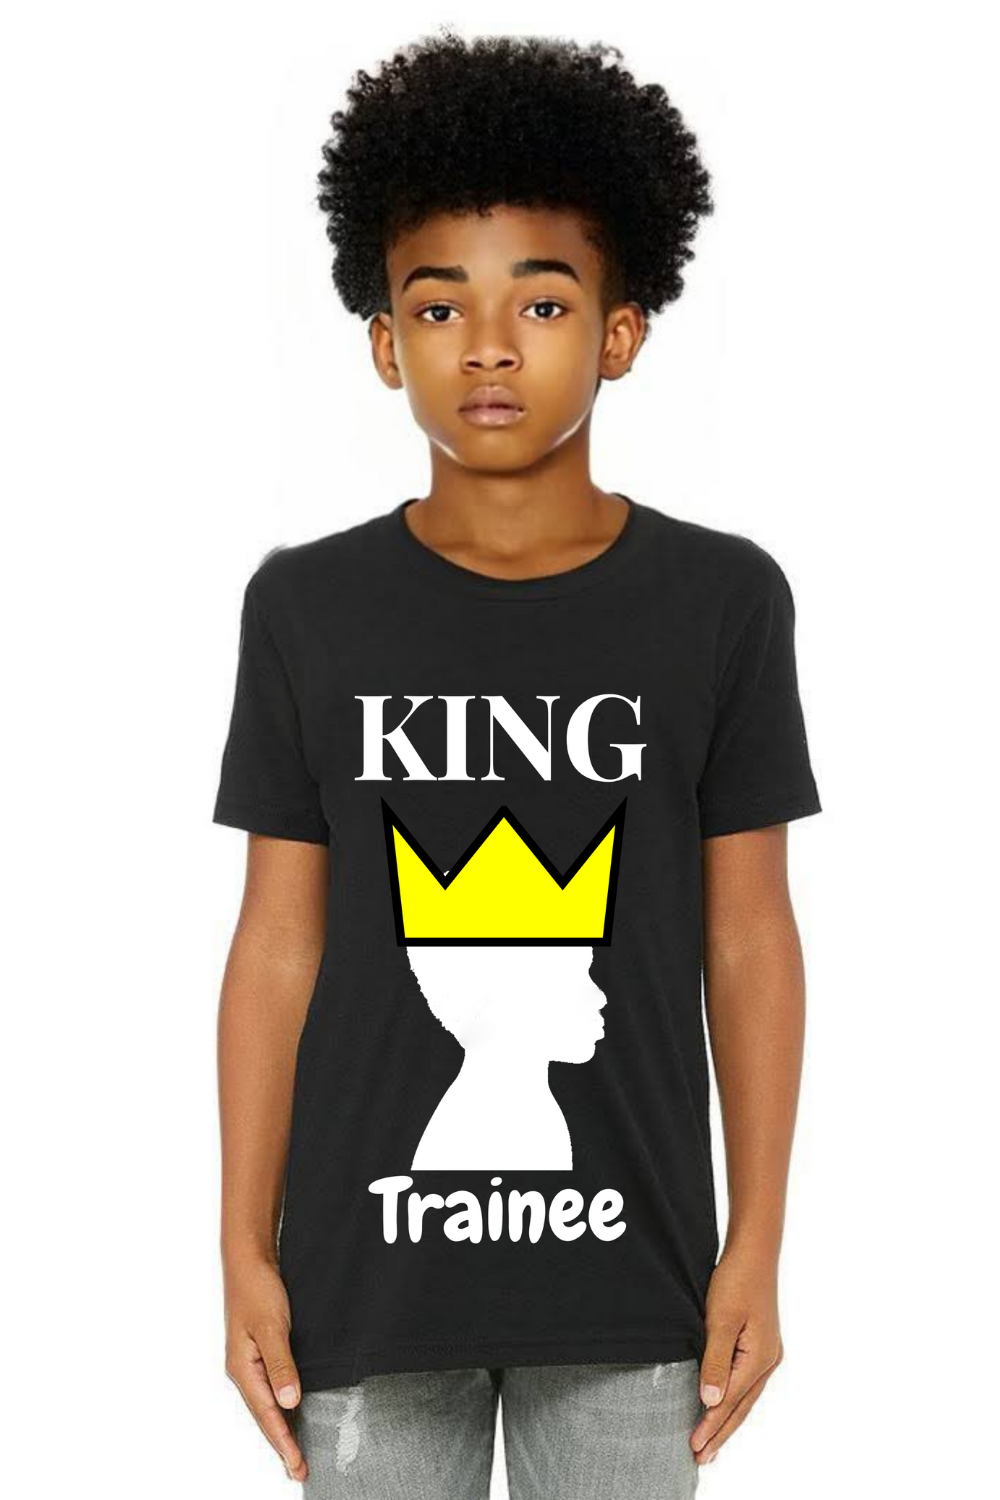 King Trainee Youth Tshirt